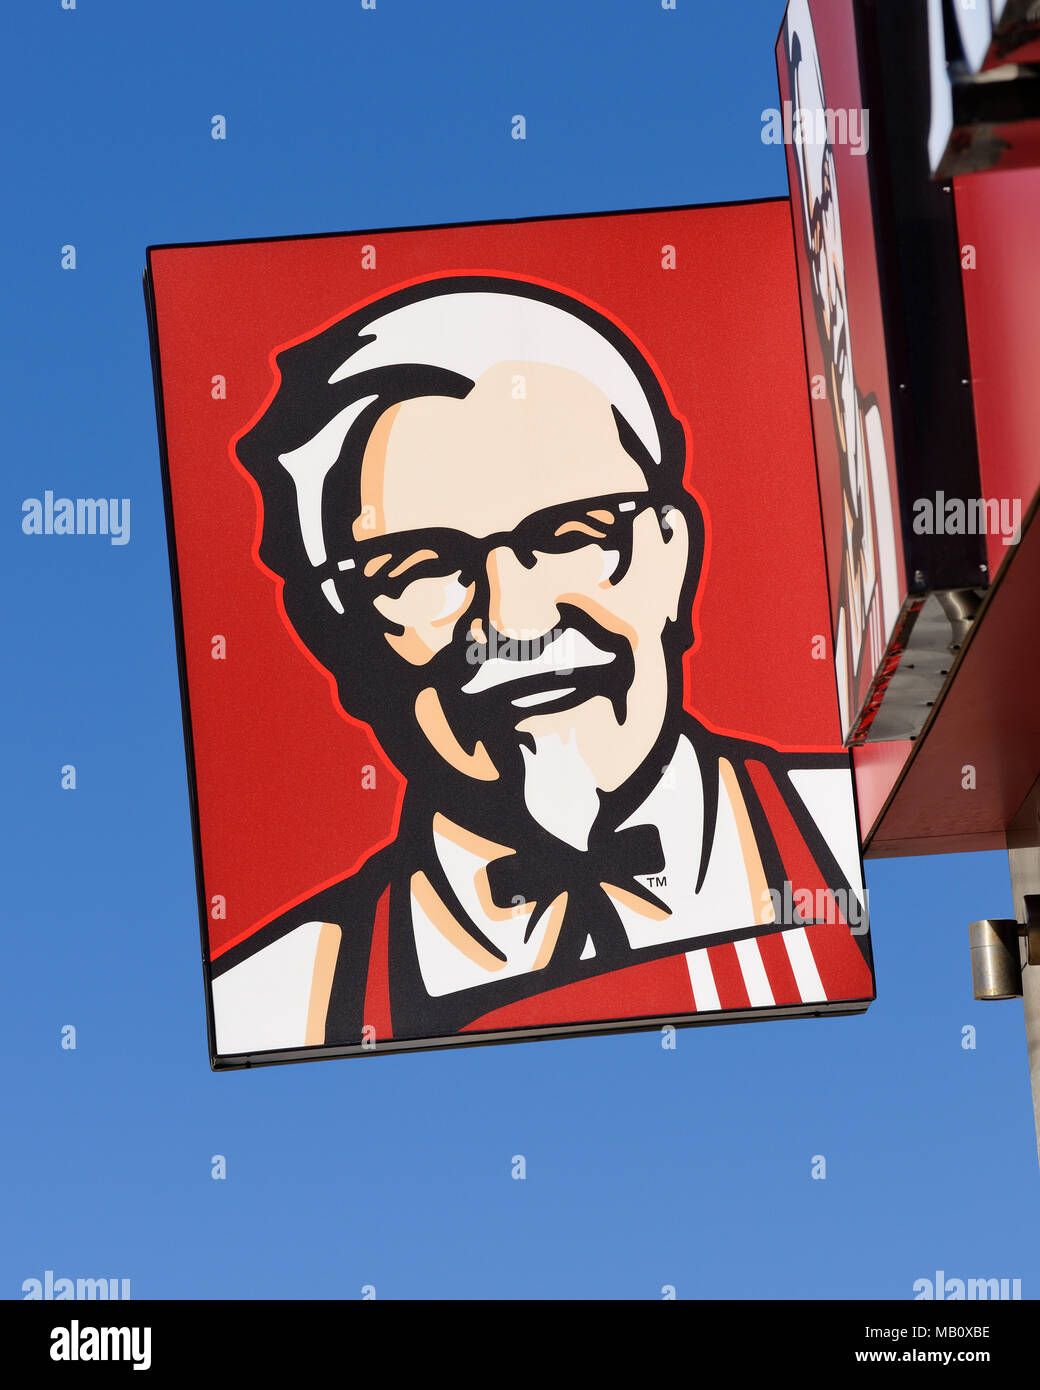 KFC Kentucky Fried Chicken signe sur l'un de ses restaurants d'alimentation rapide, Belgrade, Serbie Banque D'Images